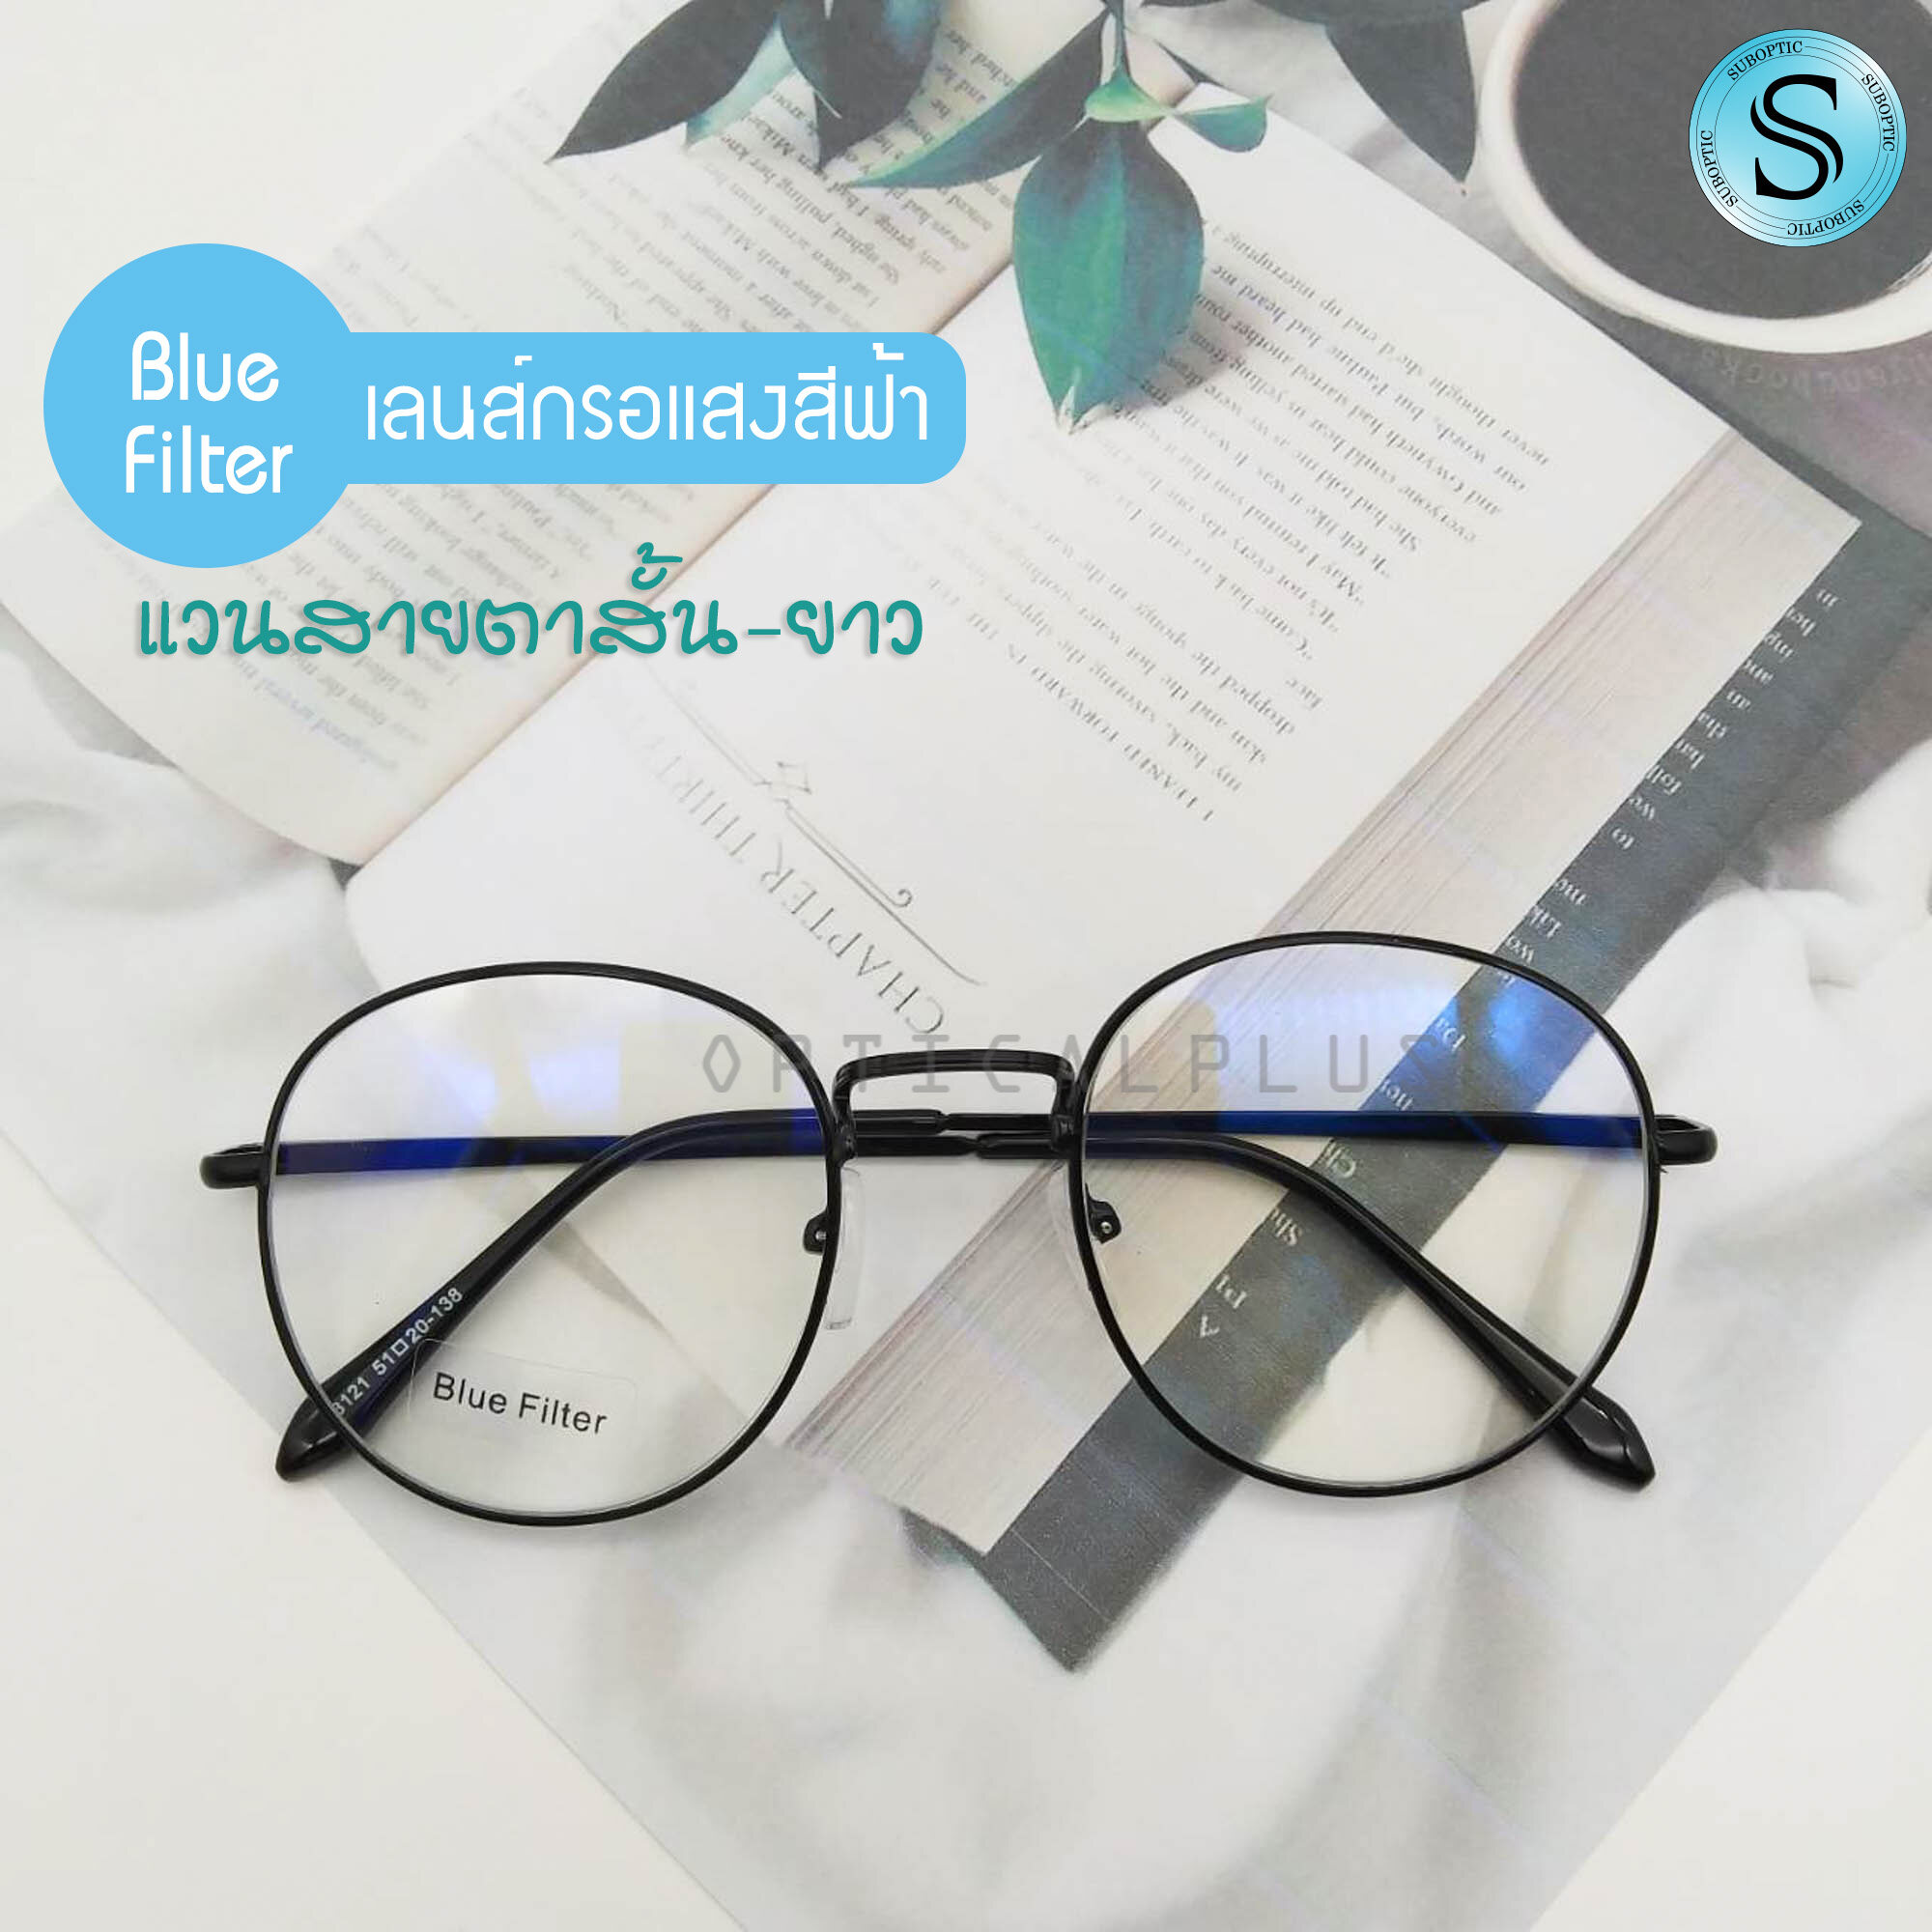 แว่นสายตาสั้นและสายตายาวกรองแสงสีฟ้า เลนส์BlueBlock ป้องกันแสงสีฟ้าที่มีโทษ พร้อมถุงผ้าใส่แว่นและผ้าเช็ดแว่น